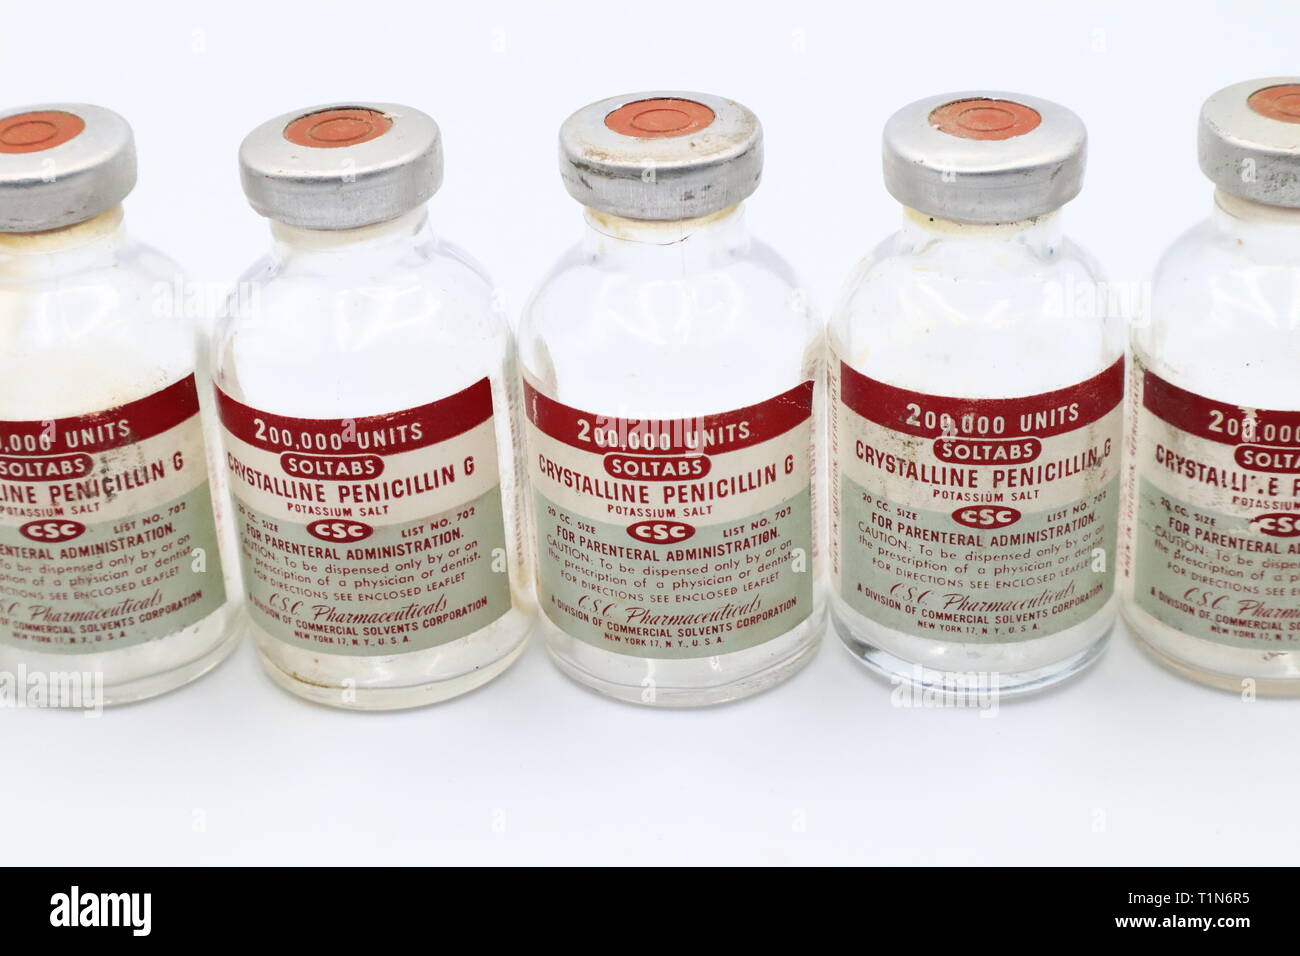 Vintage 1951 Flacon de pénicilline G produits par le SCC division Pharmaceuticals de solvants commerciaux Corporation, New York, USA Banque D'Images